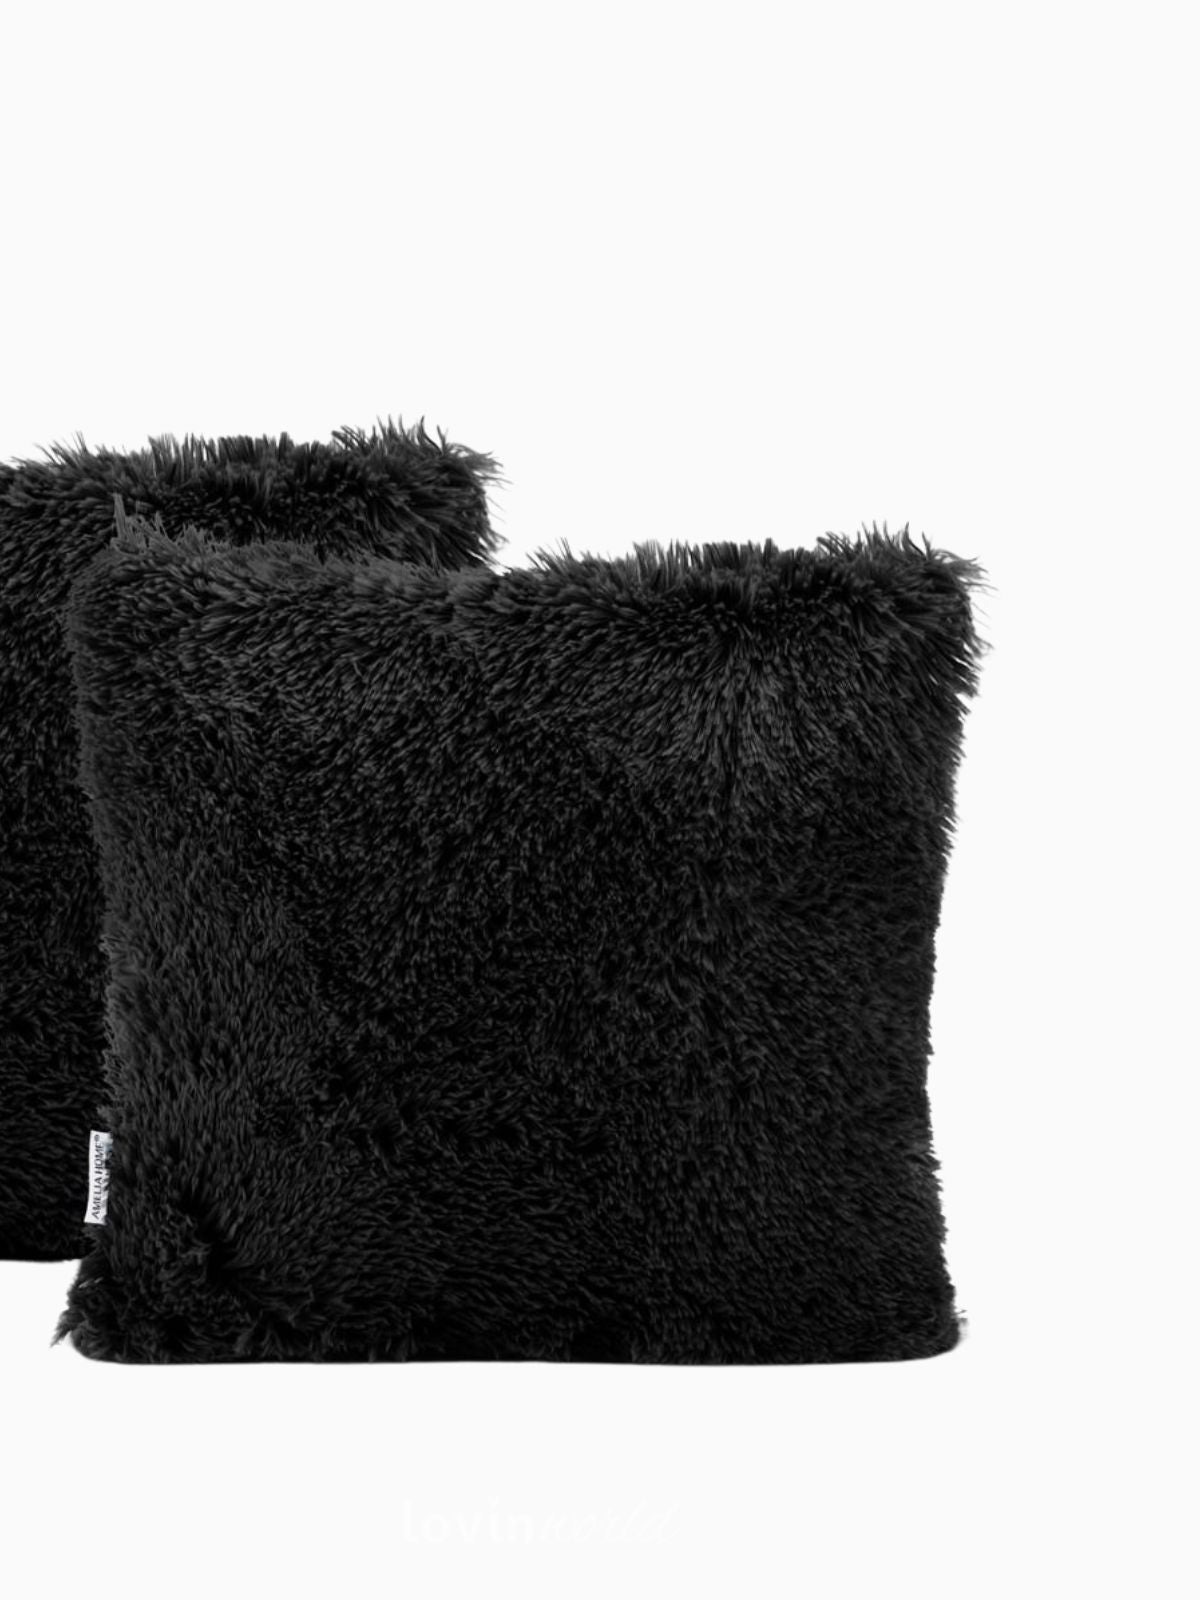 2 Federe per cuscino Karvag in colore nero 45x45 cm.-3